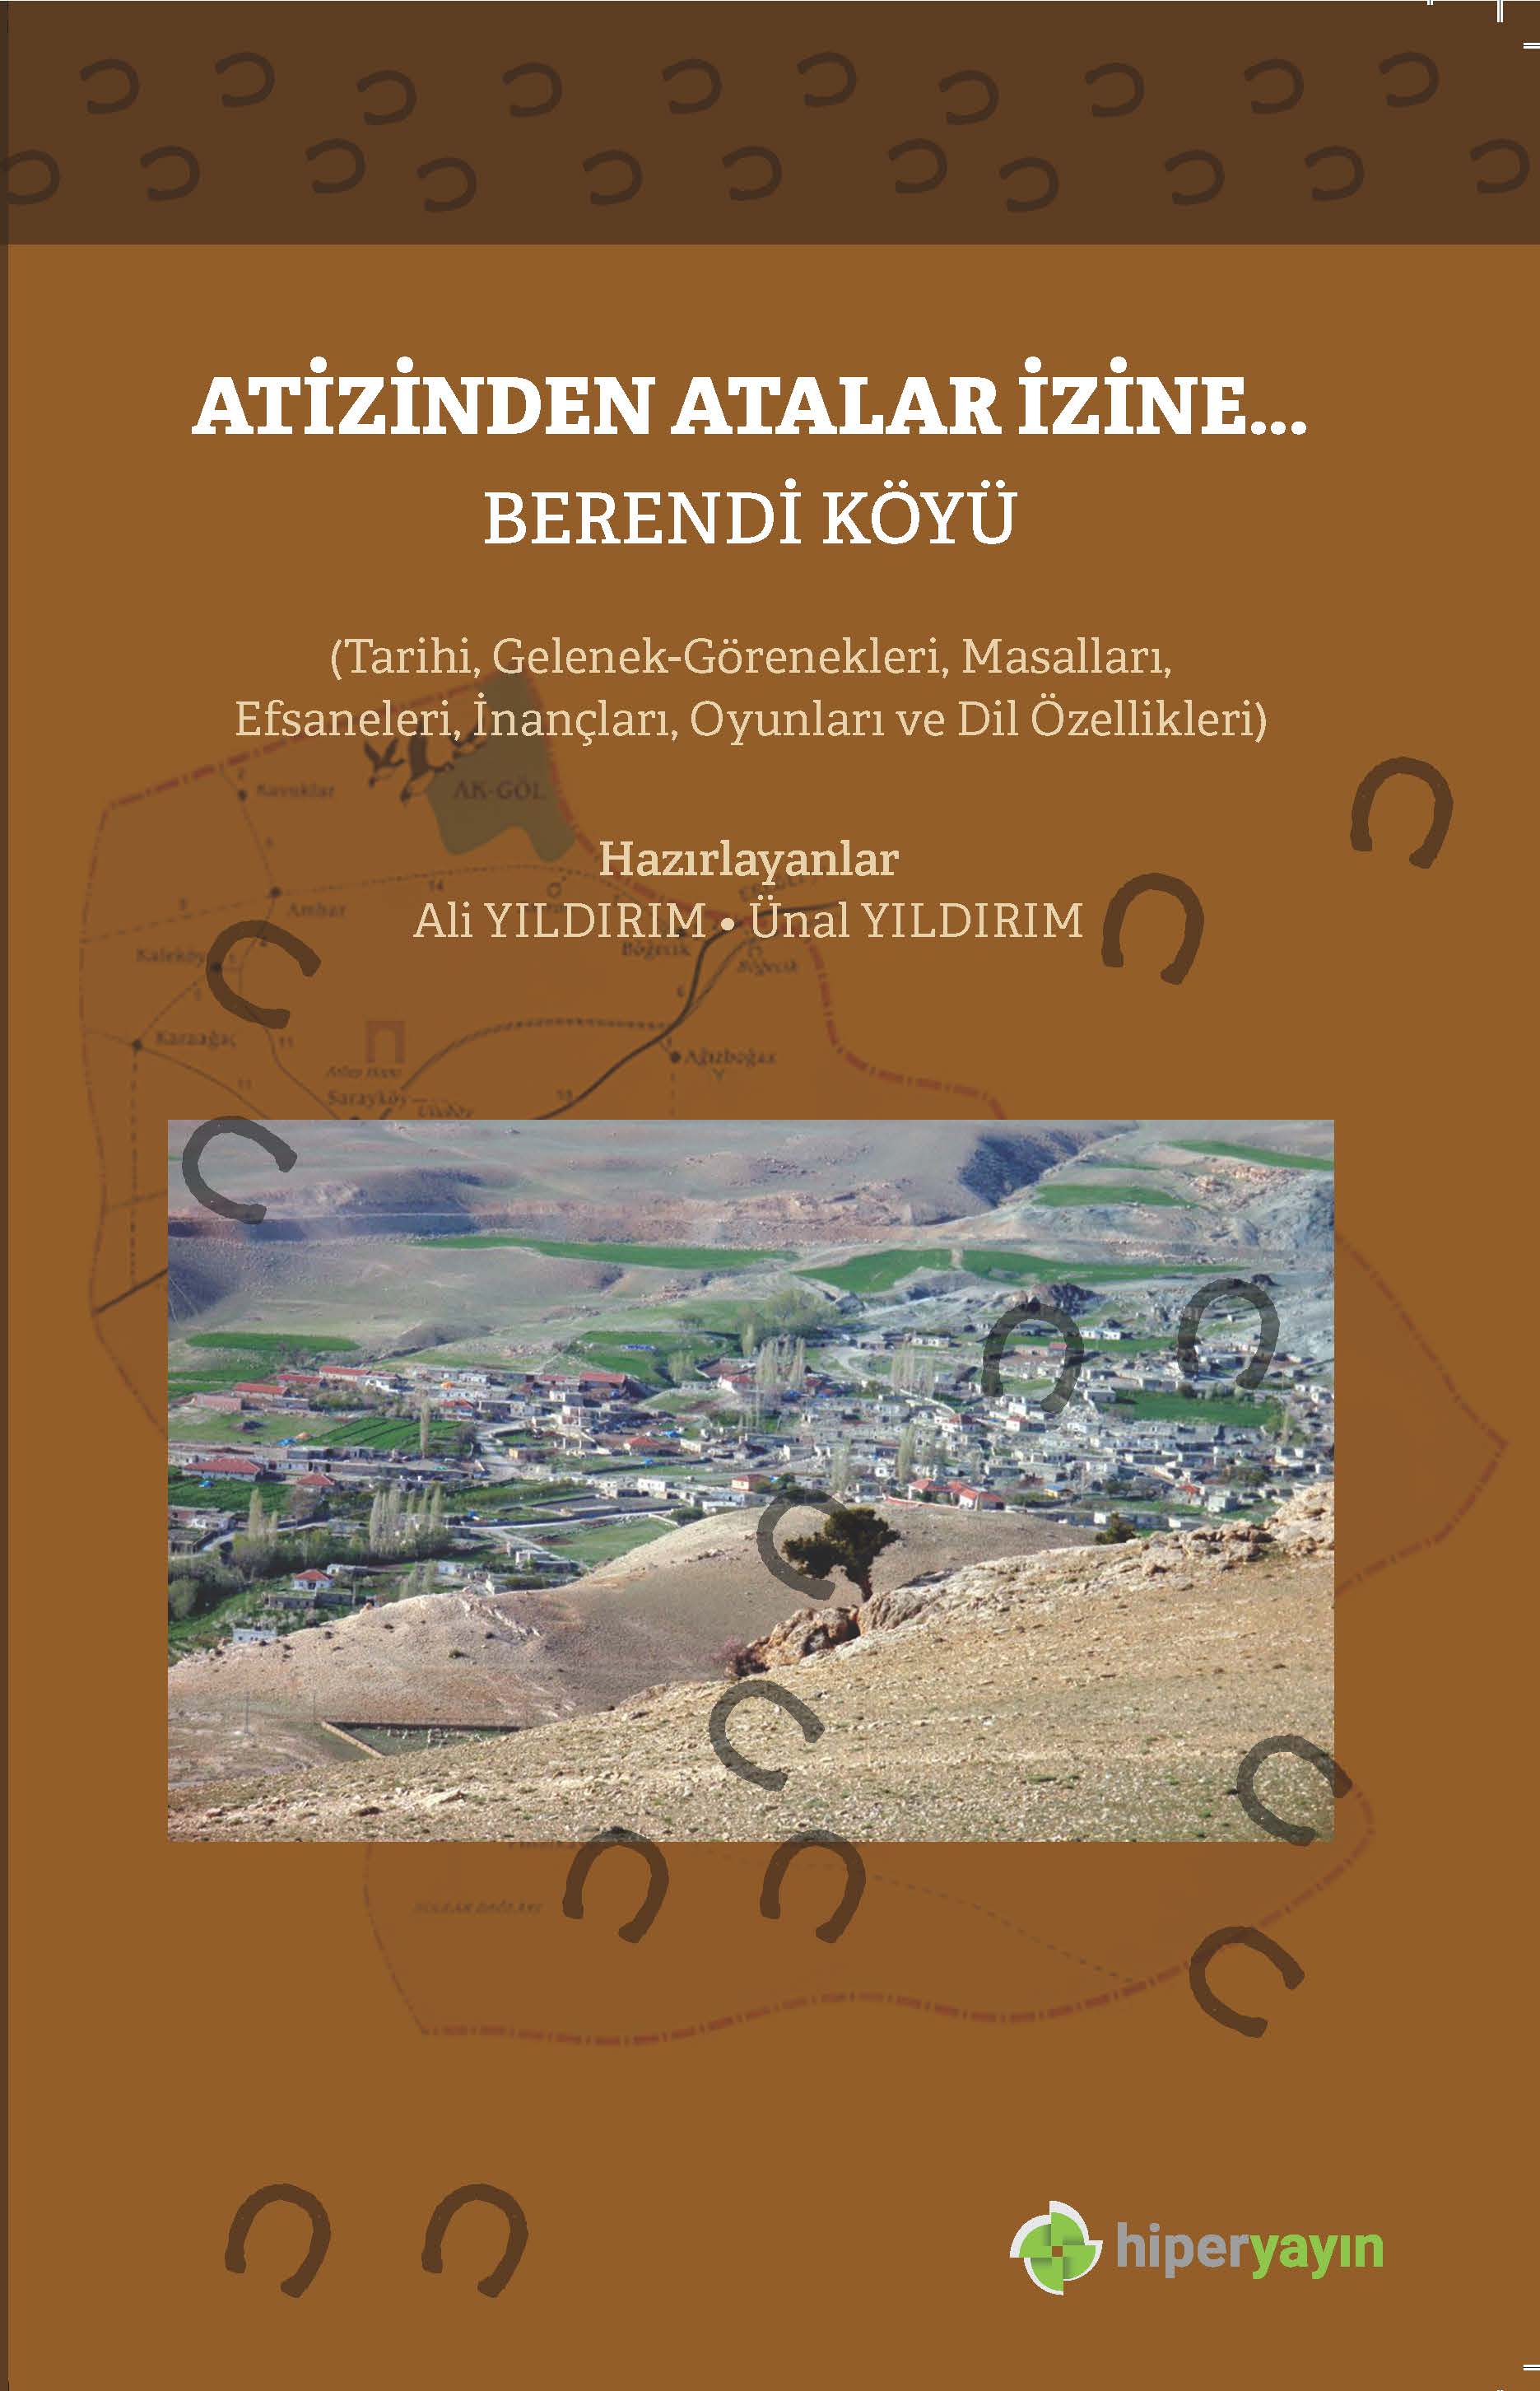 At izinden atalar izine : Berendi Köyü: (tarihi, gelenek - görenekleri, masalları, efsaneleri, inançları, oyunları ve dil özellikleri)